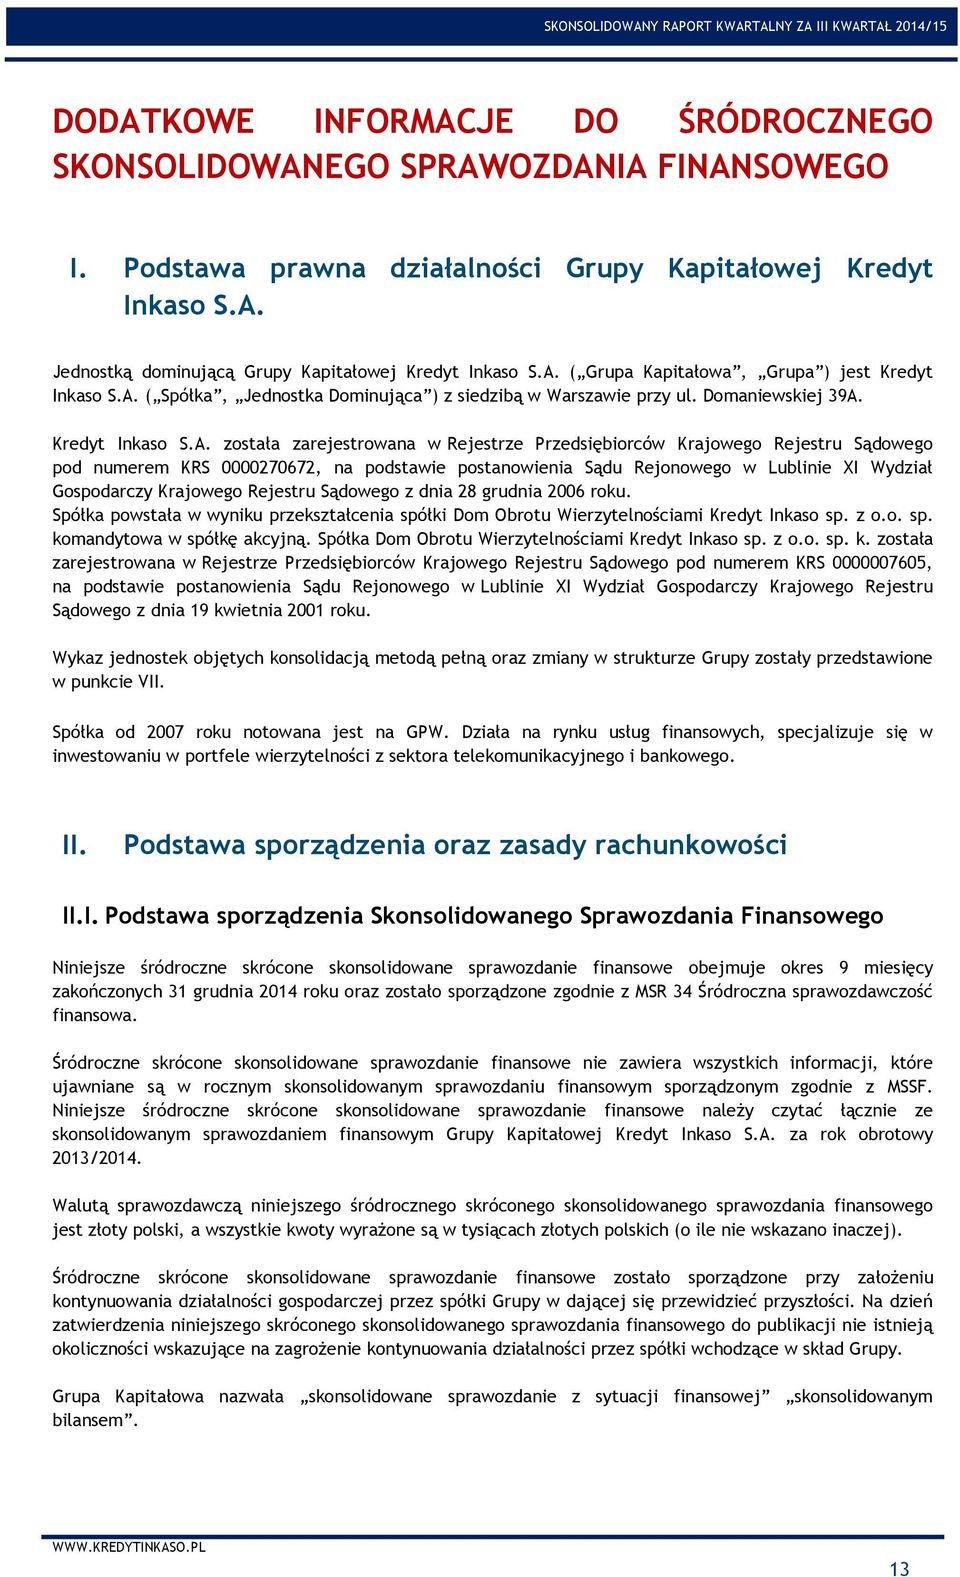 Przedsiębiorców Krajowego Rejestru Sądowego pod numerem KRS 0000270672, na podstawie postanowienia Sądu Rejonowego w Lublinie XI Wydział Gospodarczy Krajowego Rejestru Sądowego z dnia 28 grudnia 2006